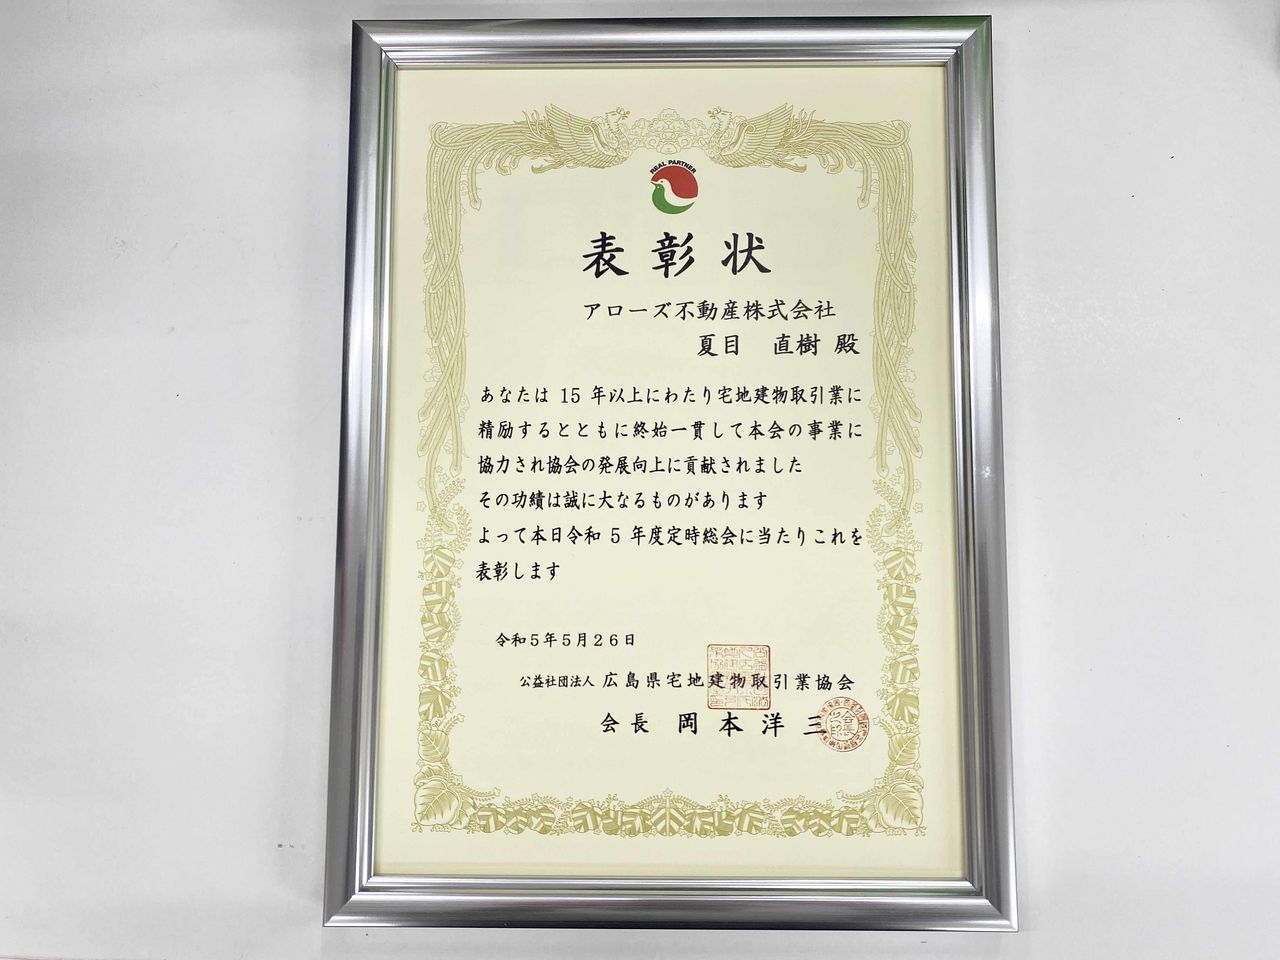 公益社団法人 広島県宅地建物取引業協会から表彰されました。